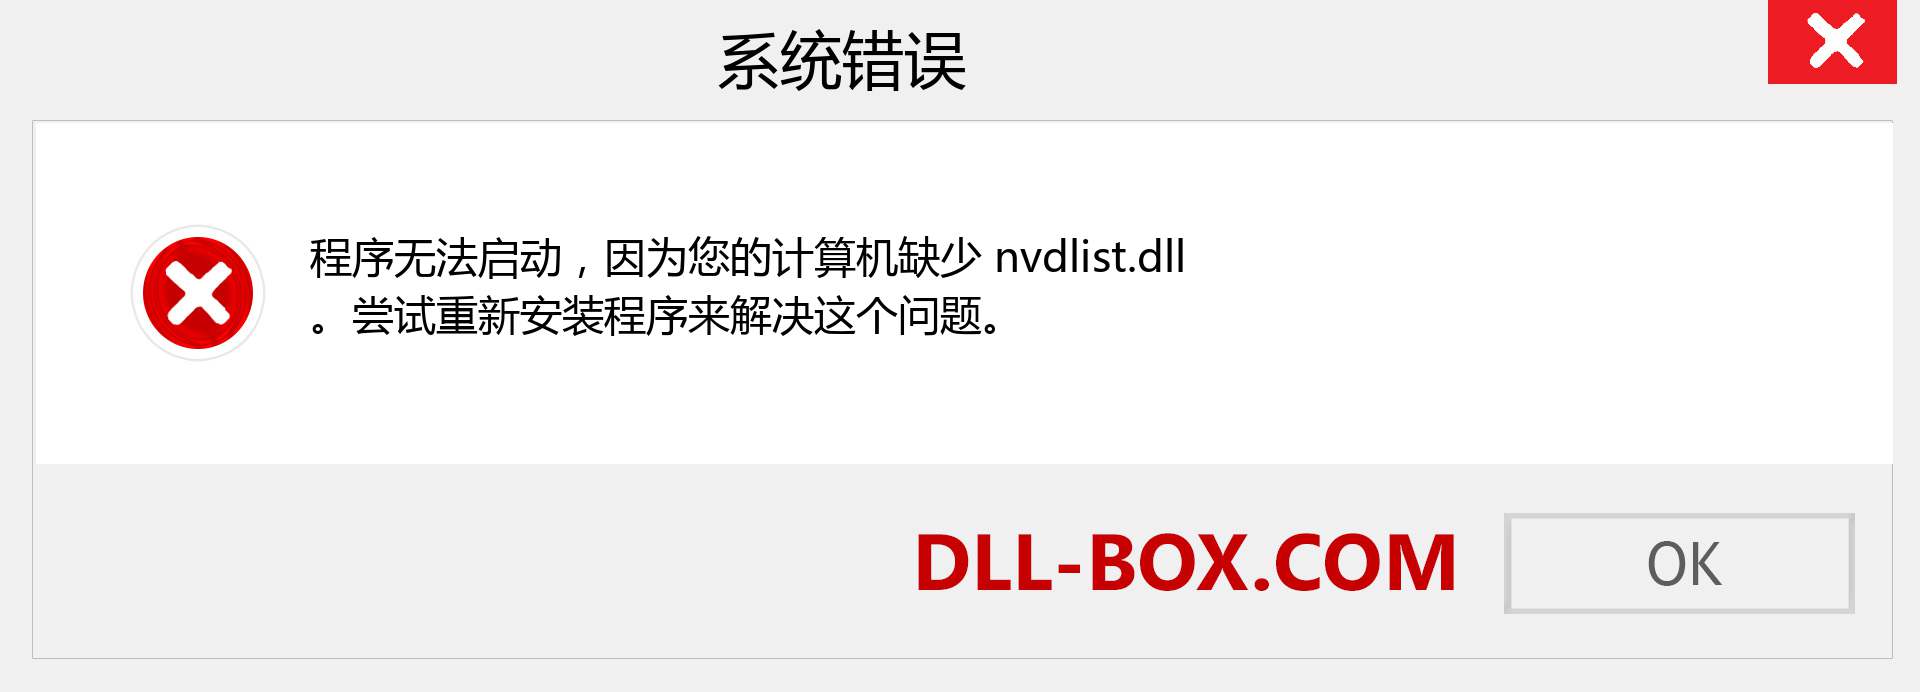 nvdlist.dll 文件丢失？。 适用于 Windows 7、8、10 的下载 - 修复 Windows、照片、图像上的 nvdlist dll 丢失错误